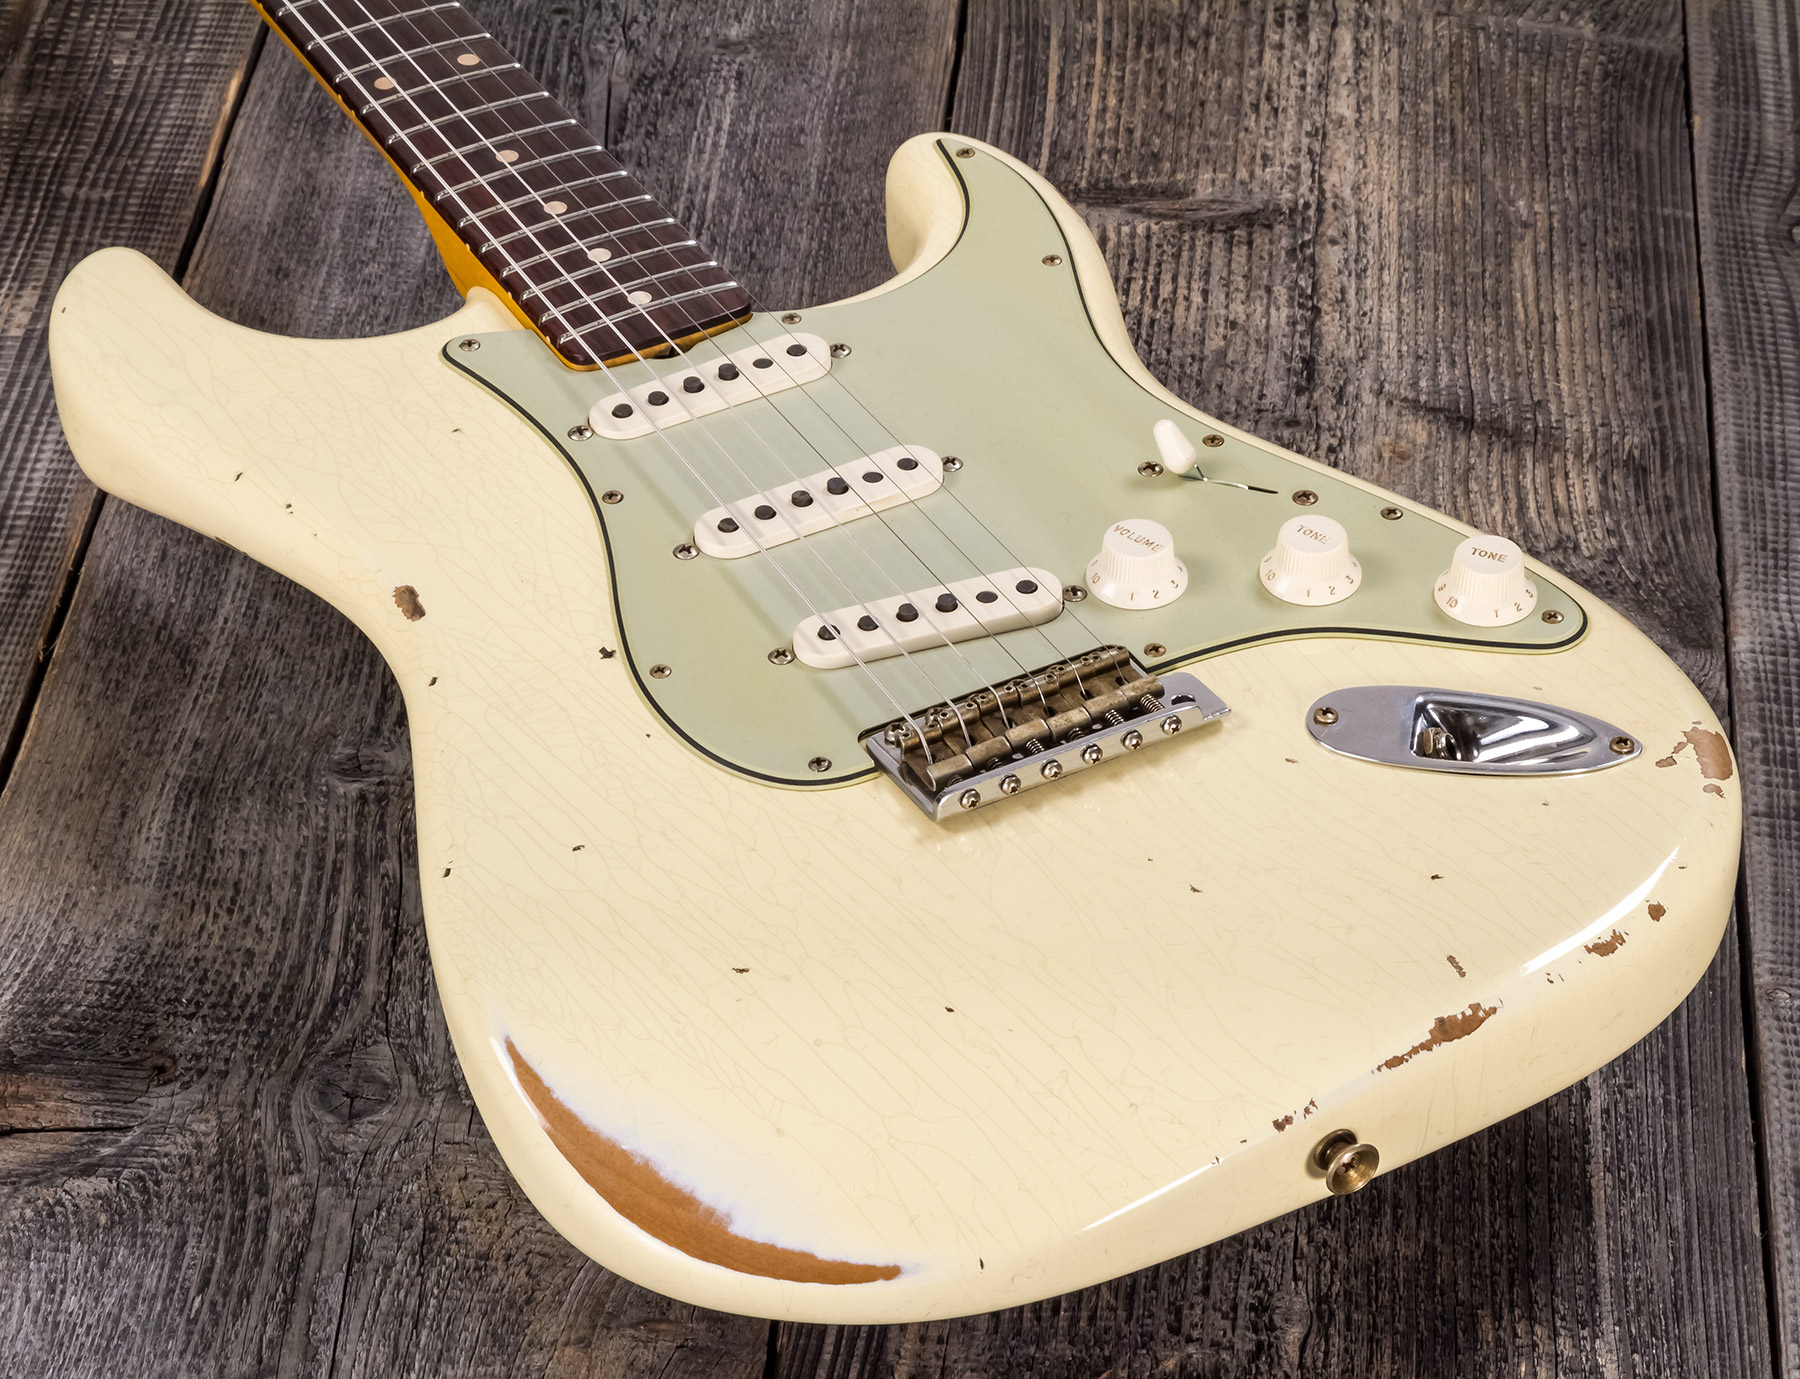 Fender Custom Shop Strat 1959 3s Trem Rw #r117393 - Relic Aged Vintage White - Str shape electric guitar - Variation 3